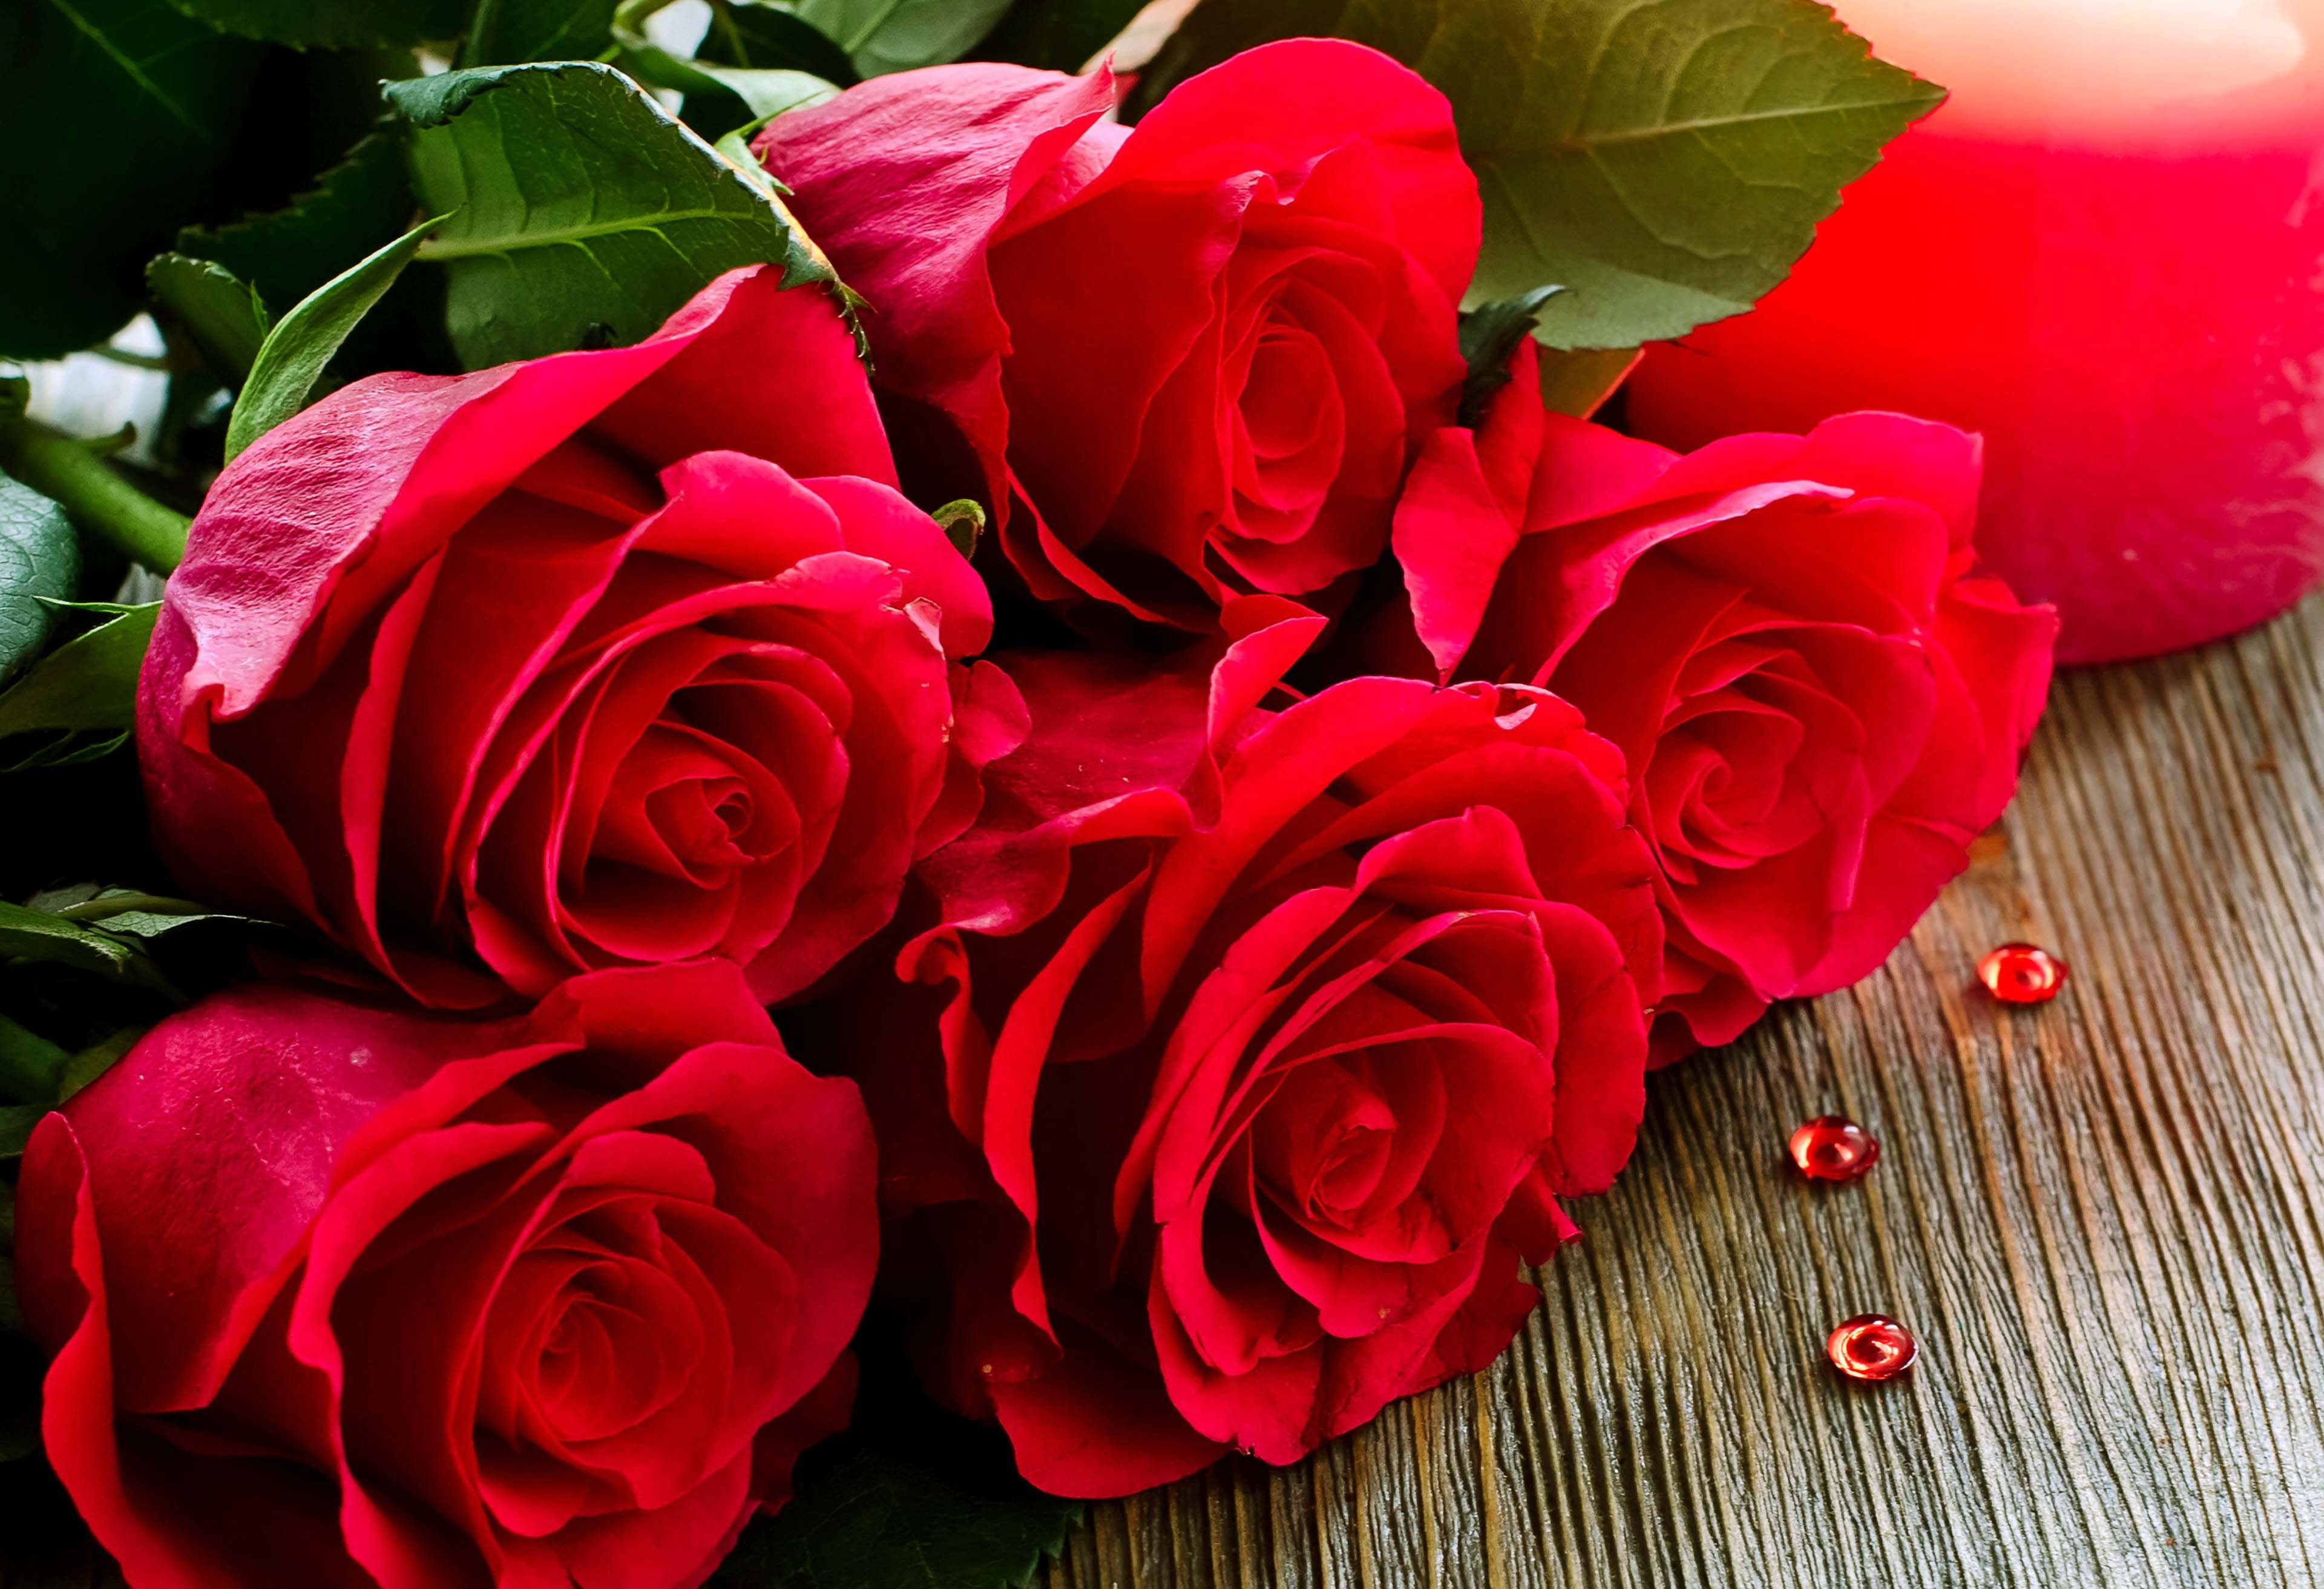 Hình ảnh đẹp về hoa hồng đỏ